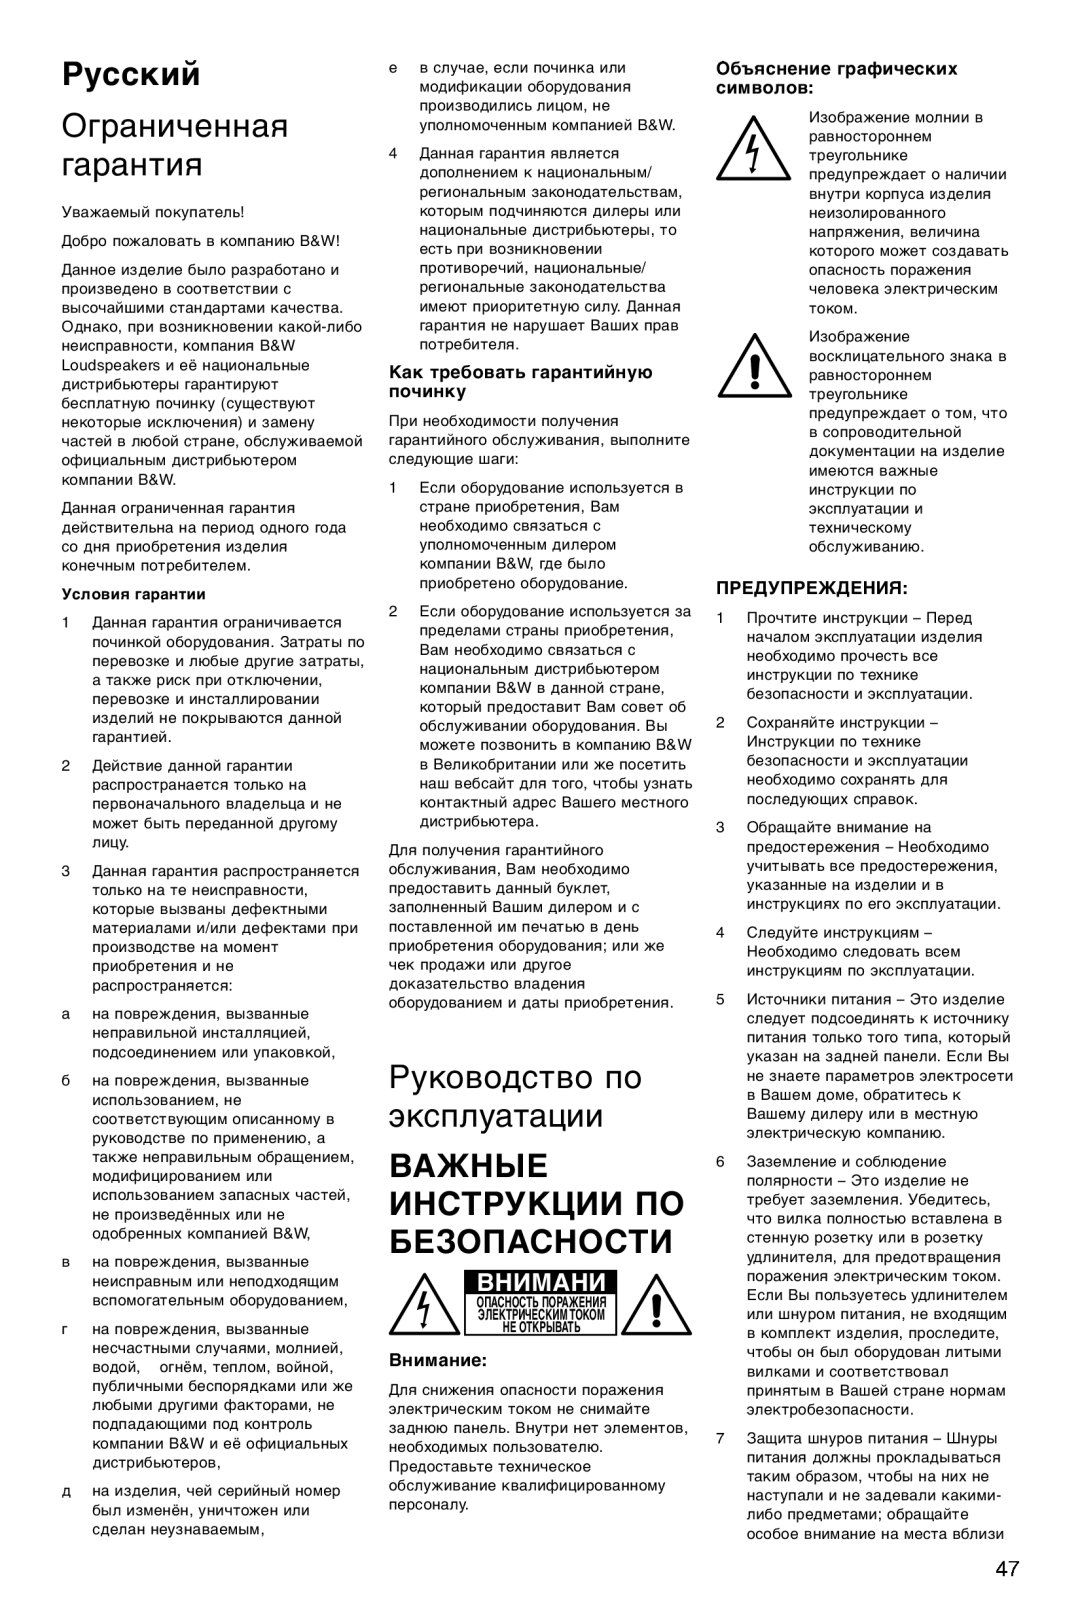 Bowers & Wilkins ASW600 Русский, Ограниченная гарантия, Руководство по эксплуатации, Важные Инструкции По Безопасности 